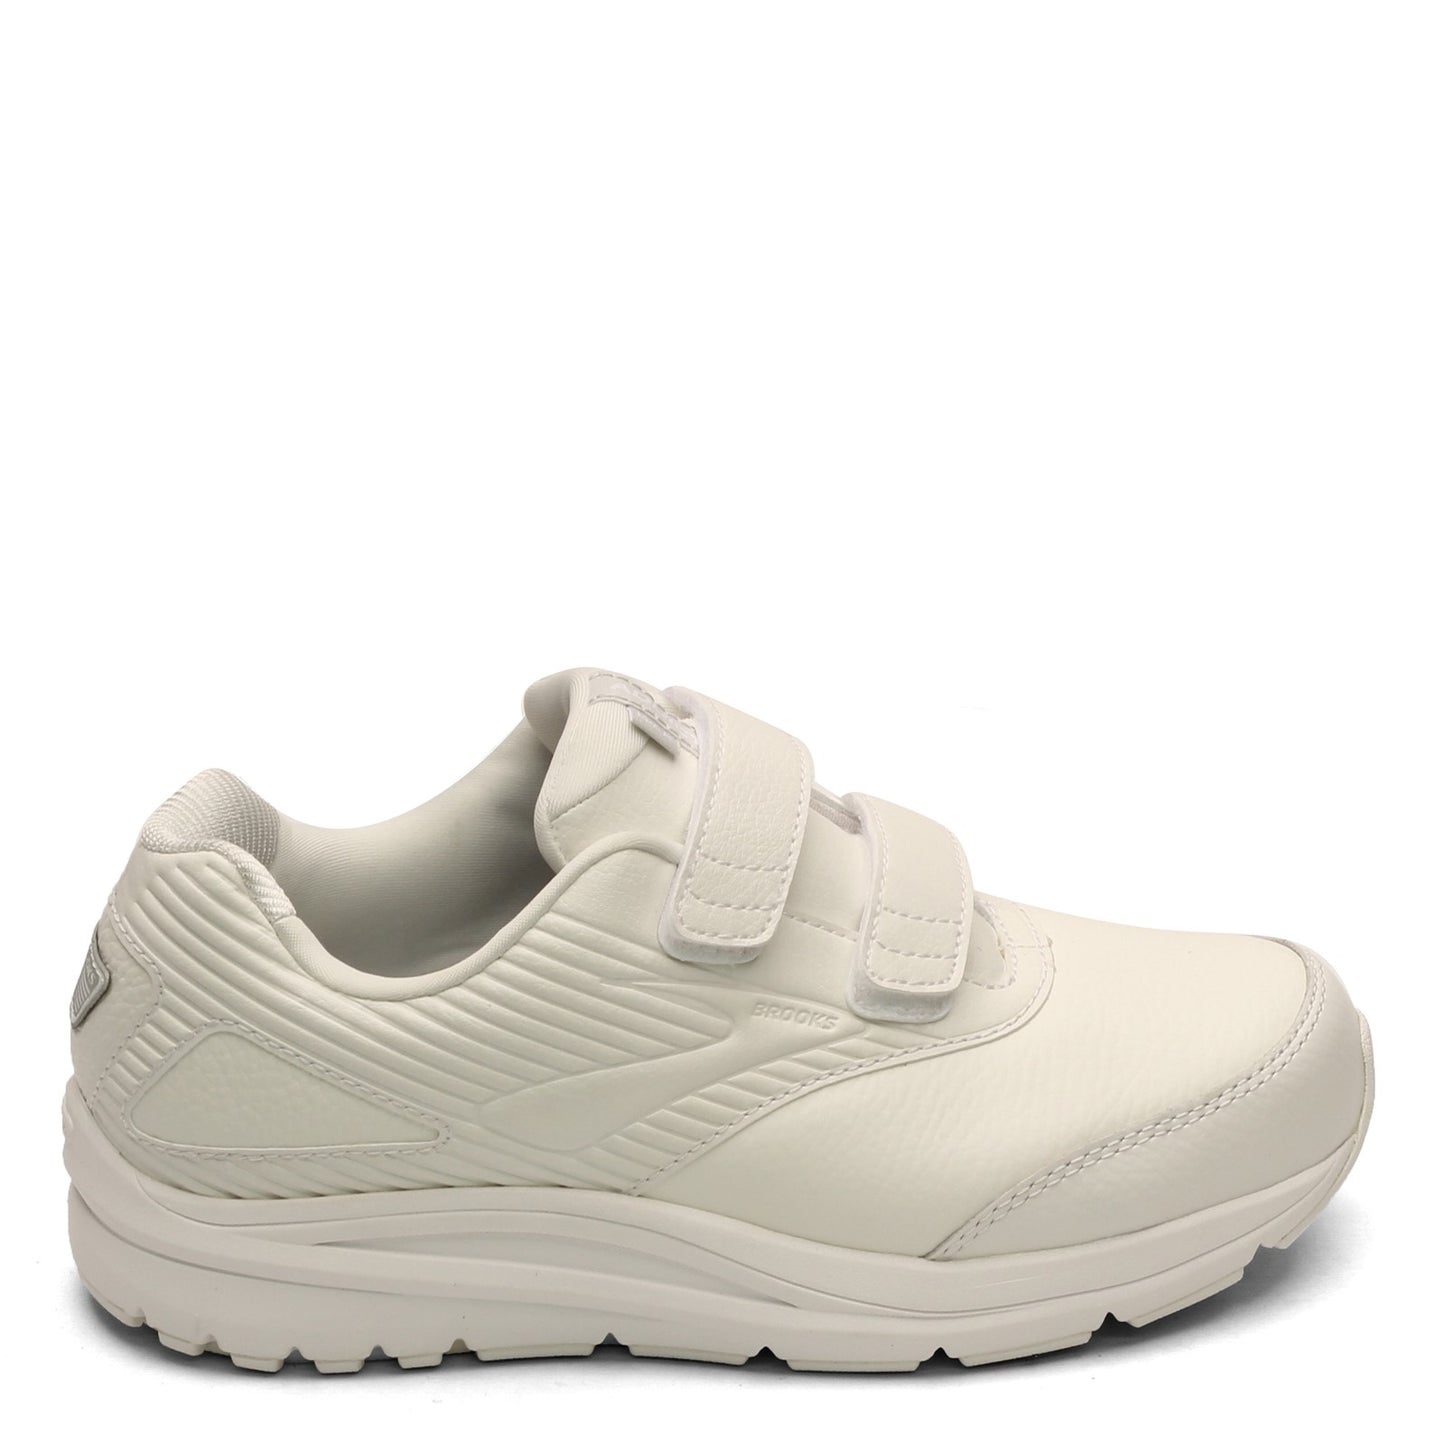 Peltz Shoes  Women's Brooks Addiction Walker V-Strap 2 Walking Shoe - Wide Width White 120309 1D 142